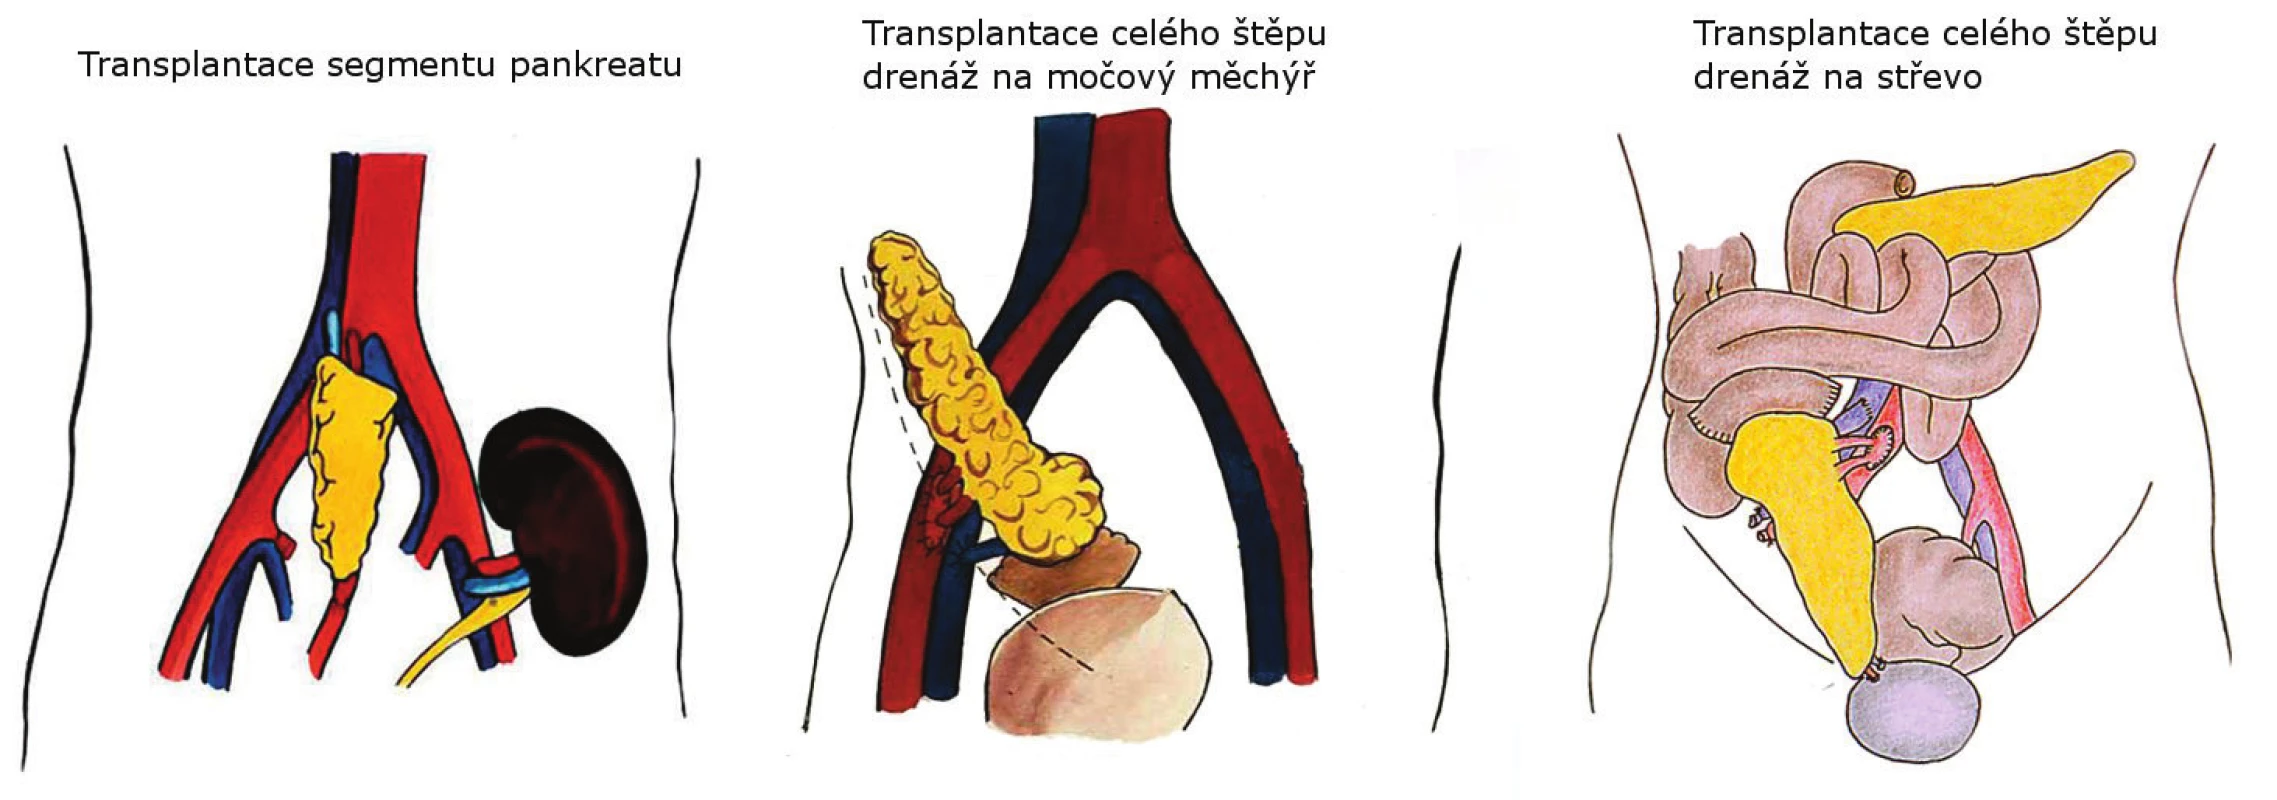 Techniky transplantace pankreatu používané v IKEM
Fig. 1. Pancreas transplantation techniques used in IKEM